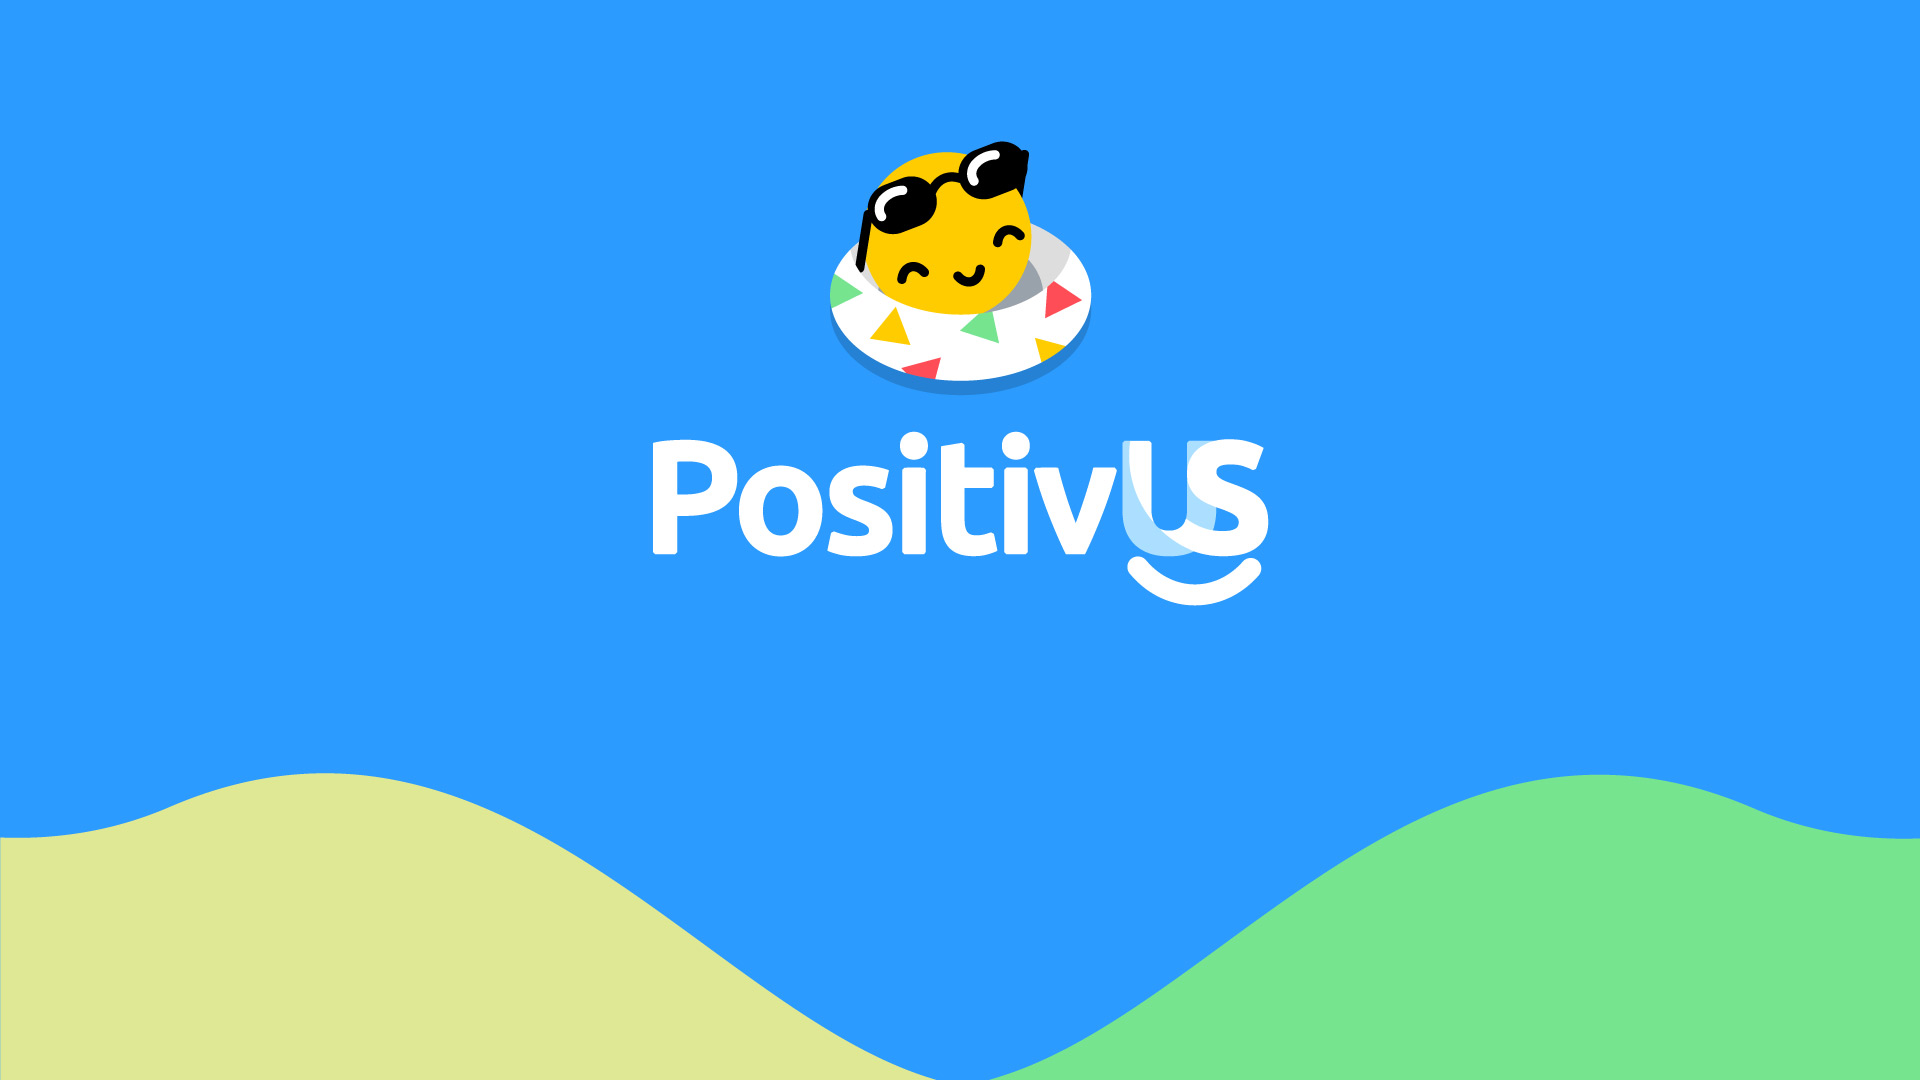 PositivUS positive communication